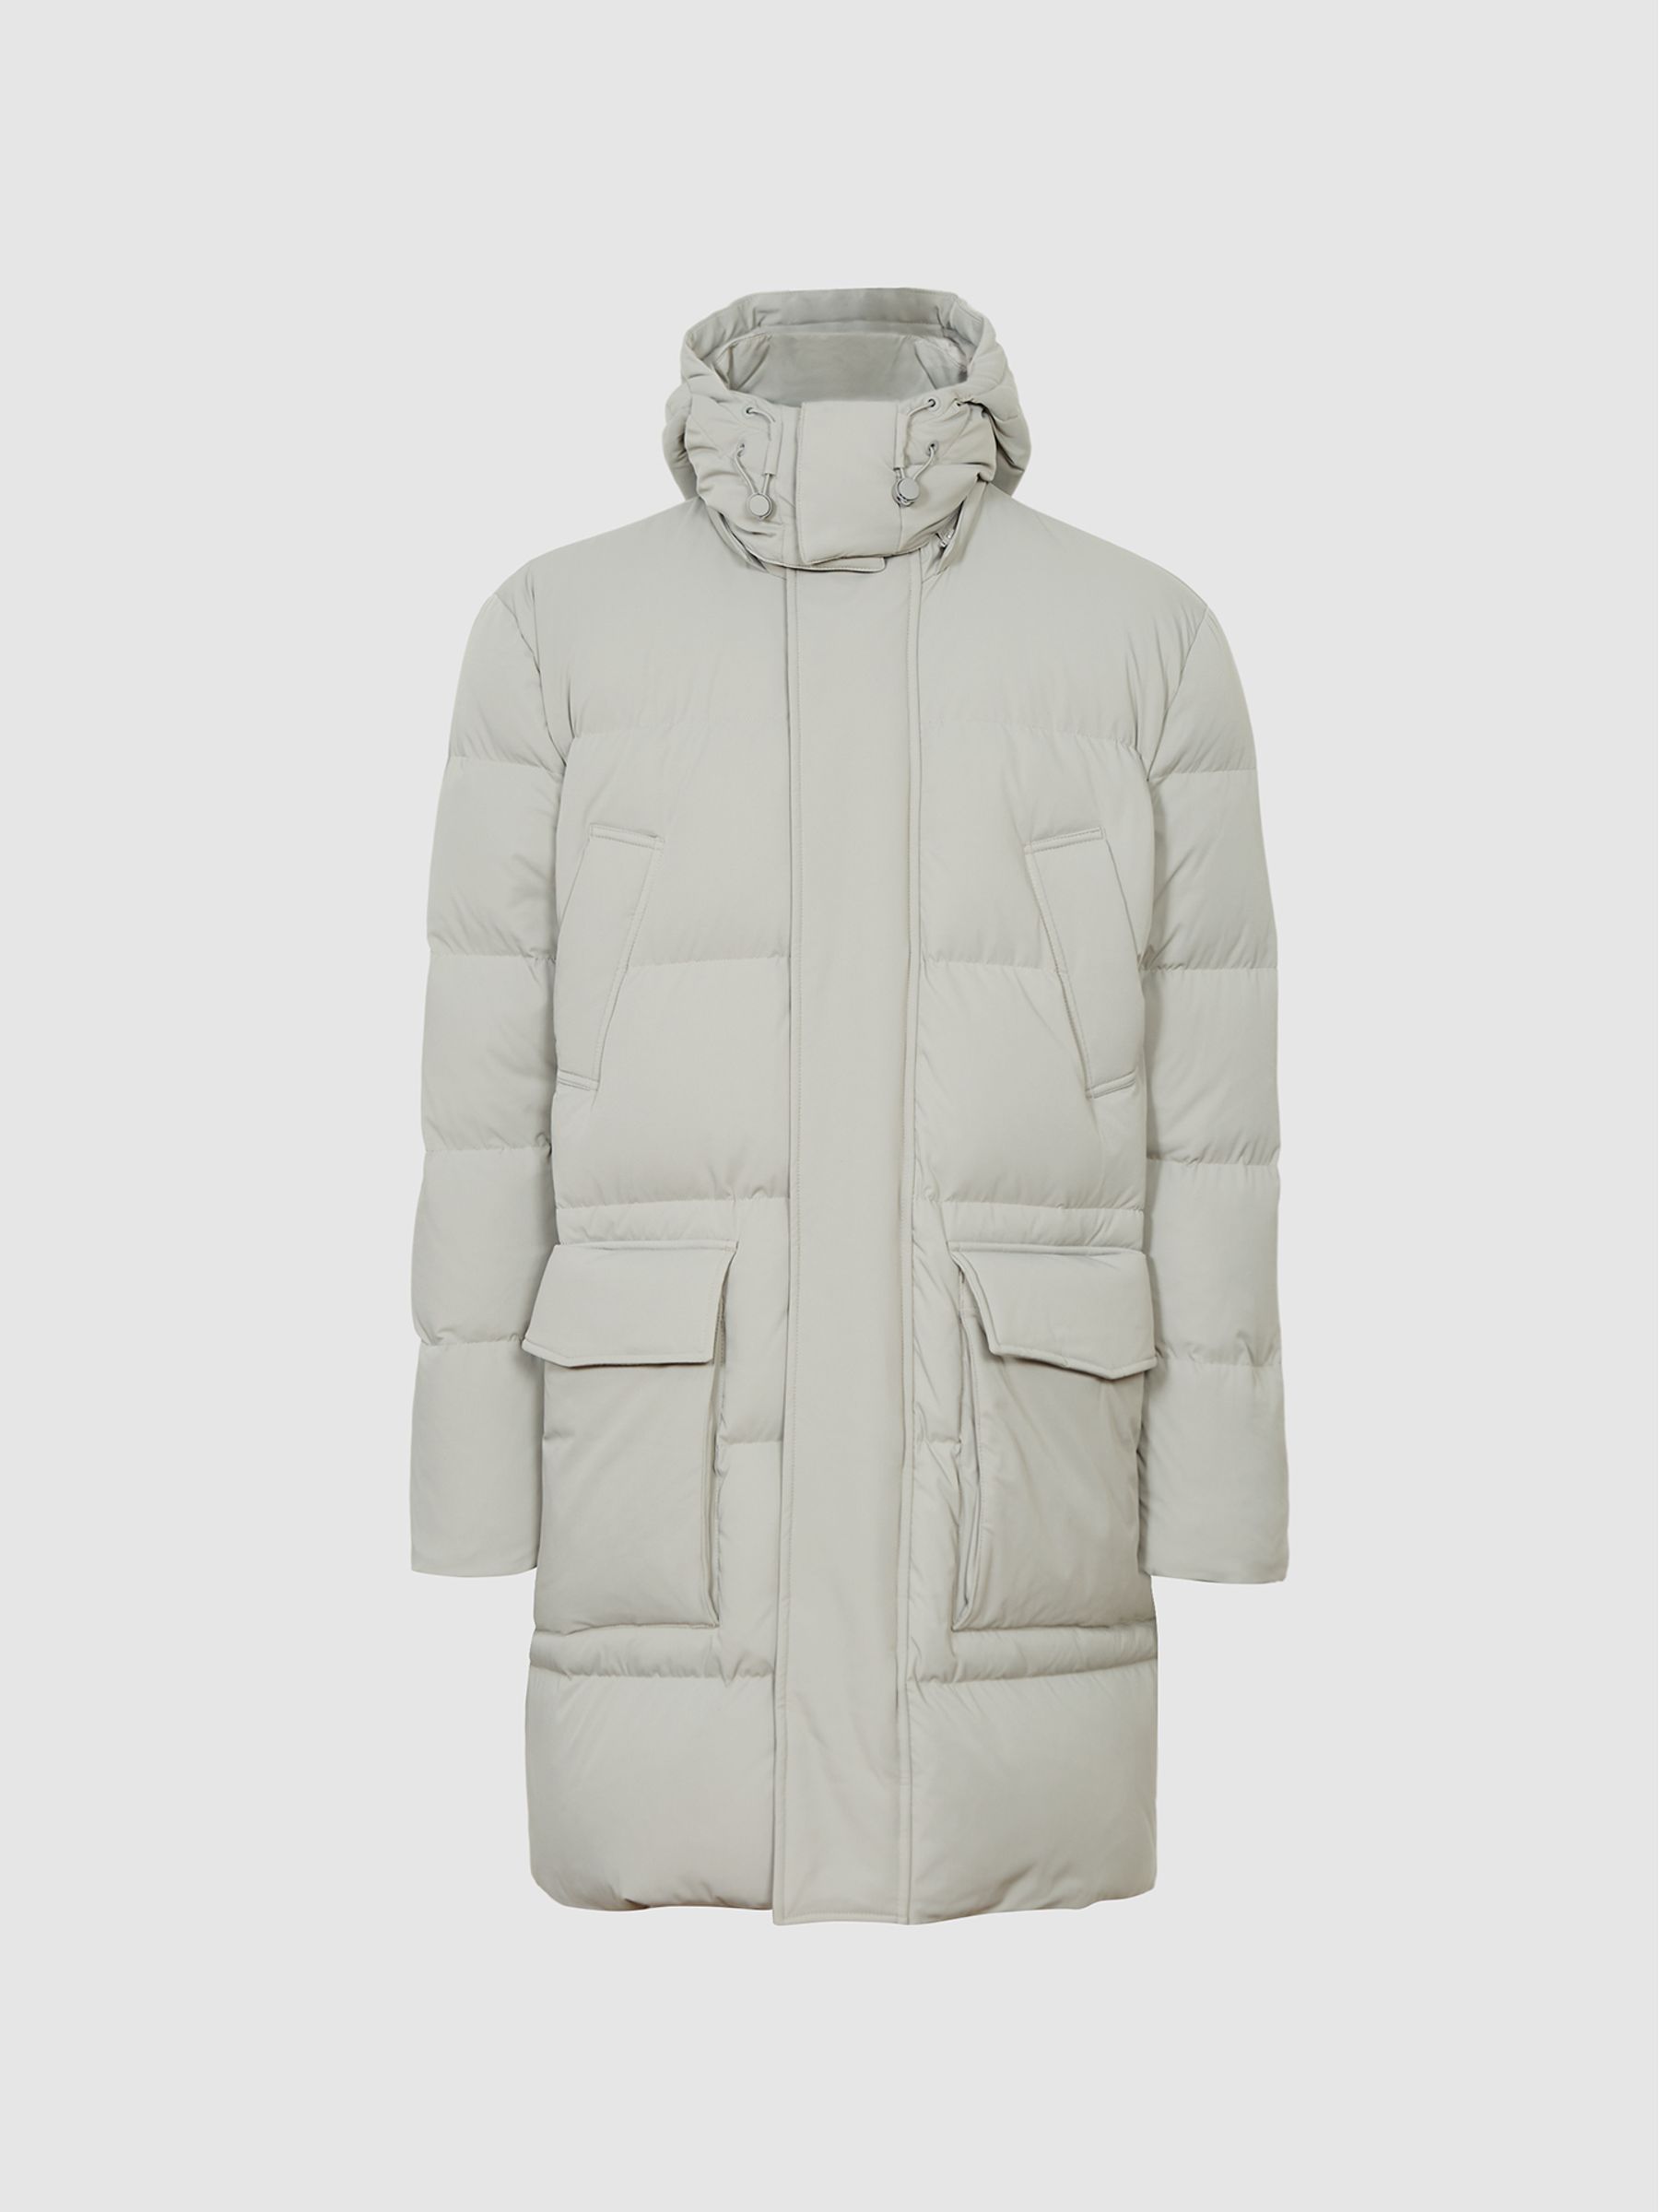 Reiss Skye Longline Hooded Puffer Jacket - REISS